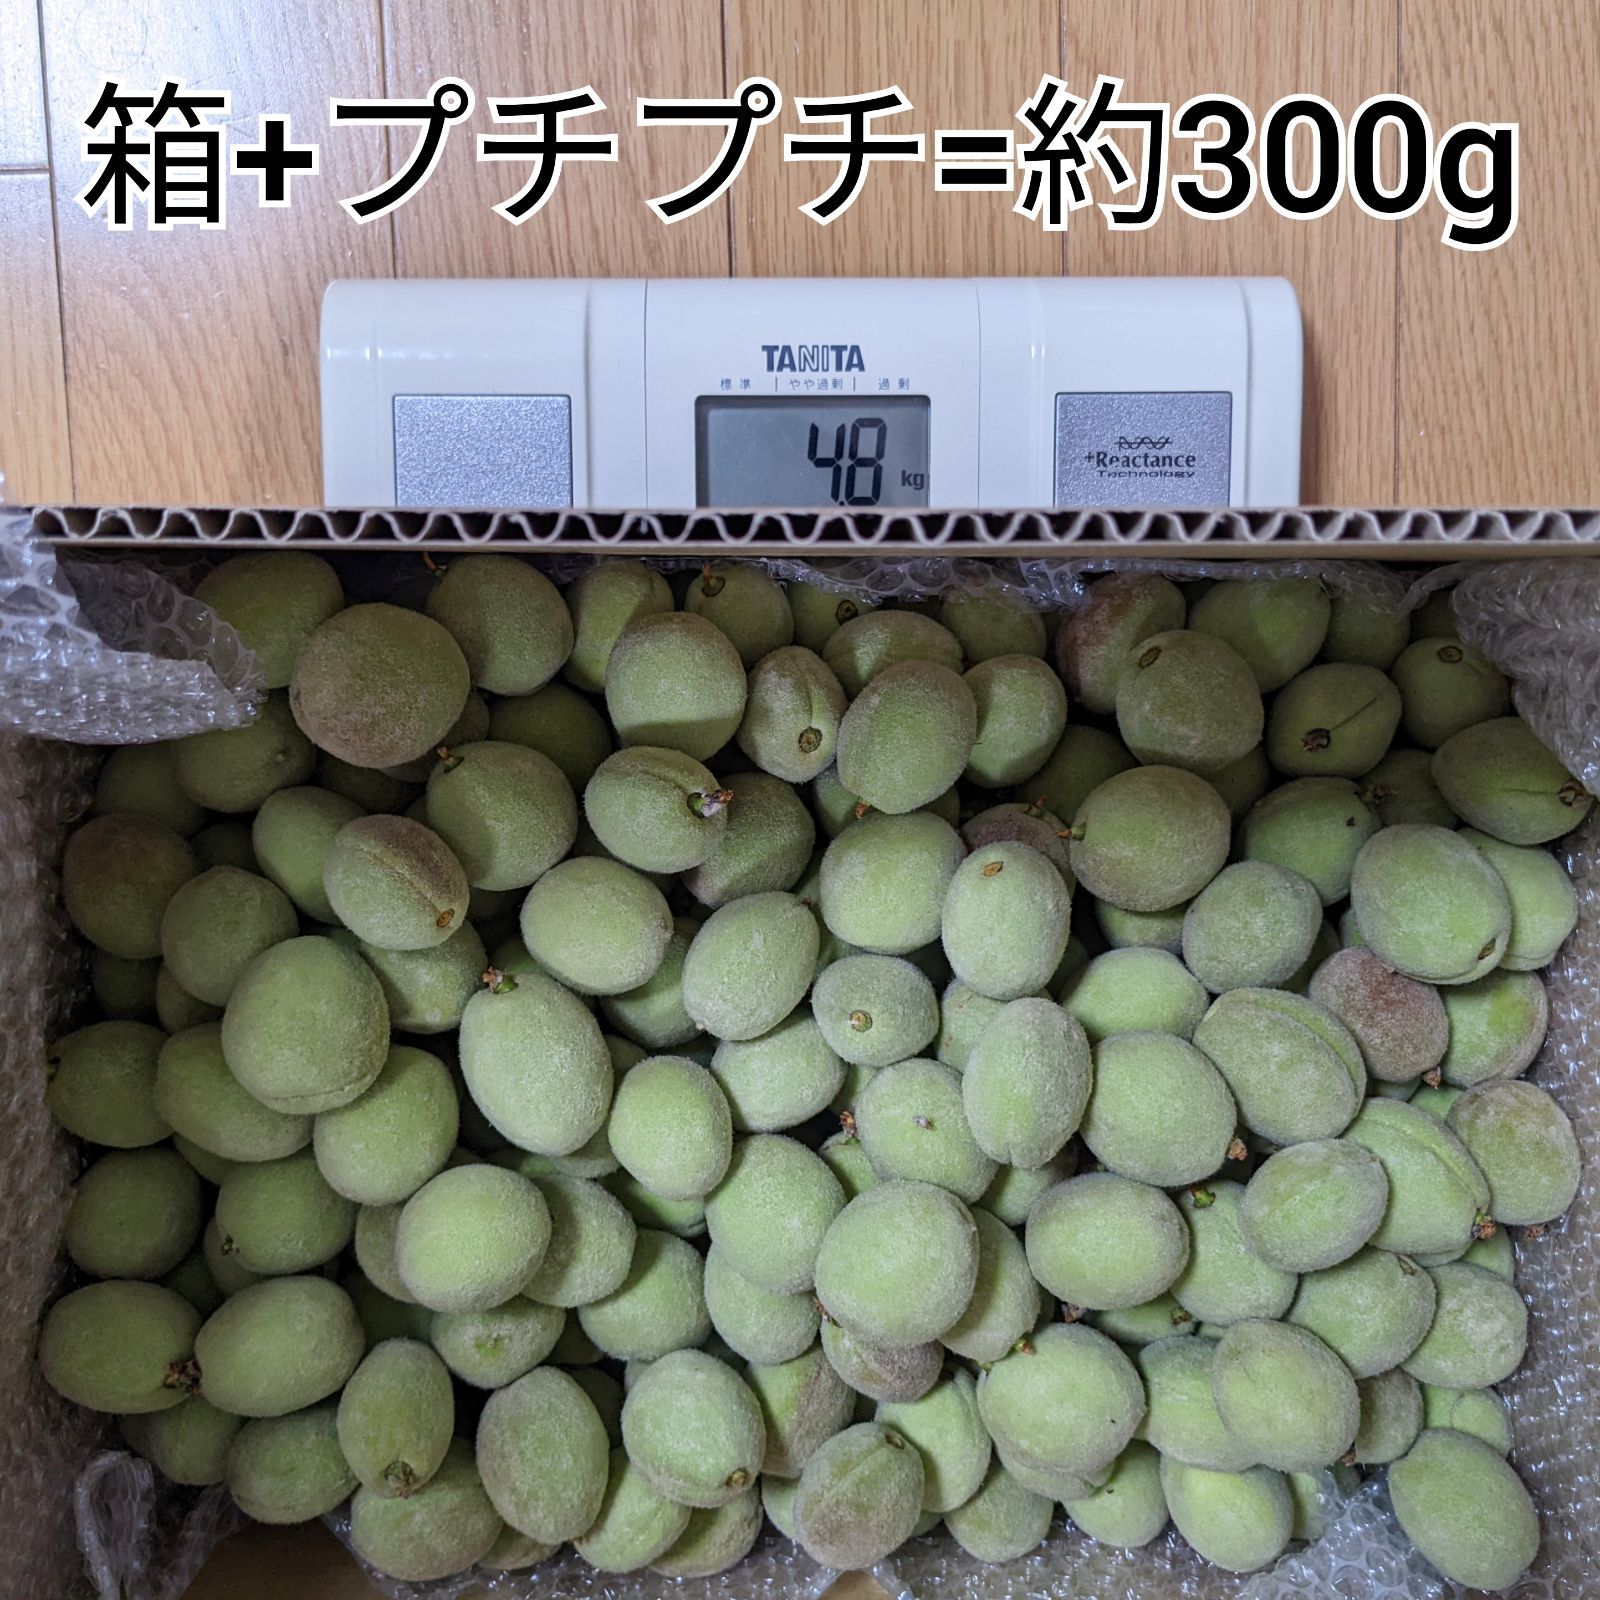 山梨の桃 加工用箱込み6.7kg - 通販 - nutriplanet.org